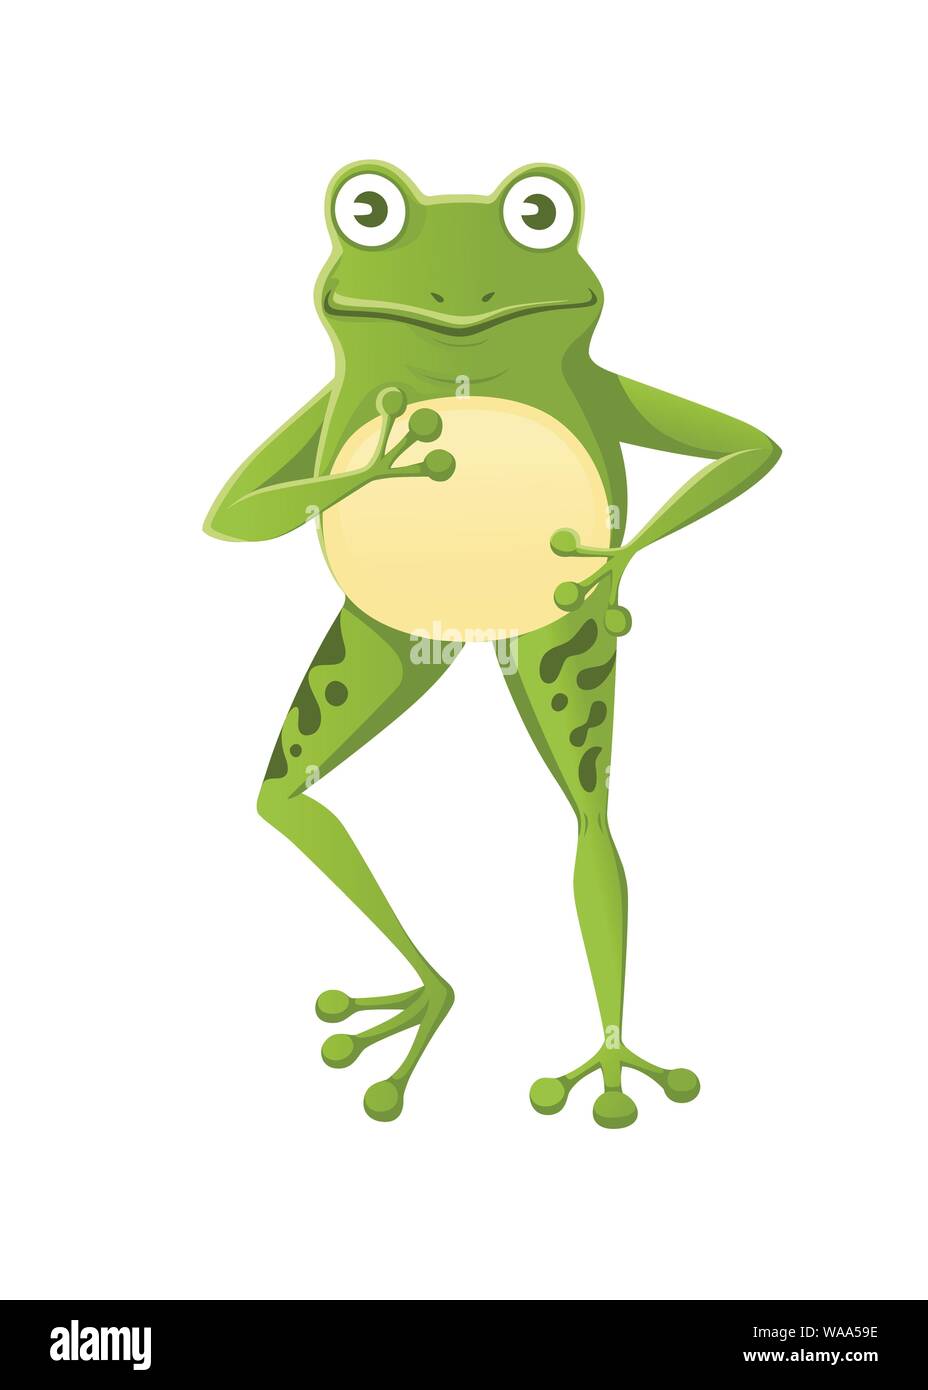 Süß lächelnd grüner Frosch stehend auf Cartoon zwei Beine Tier design Flachbild Vector Illustration auf weißem Hintergrund. Stock Vektor